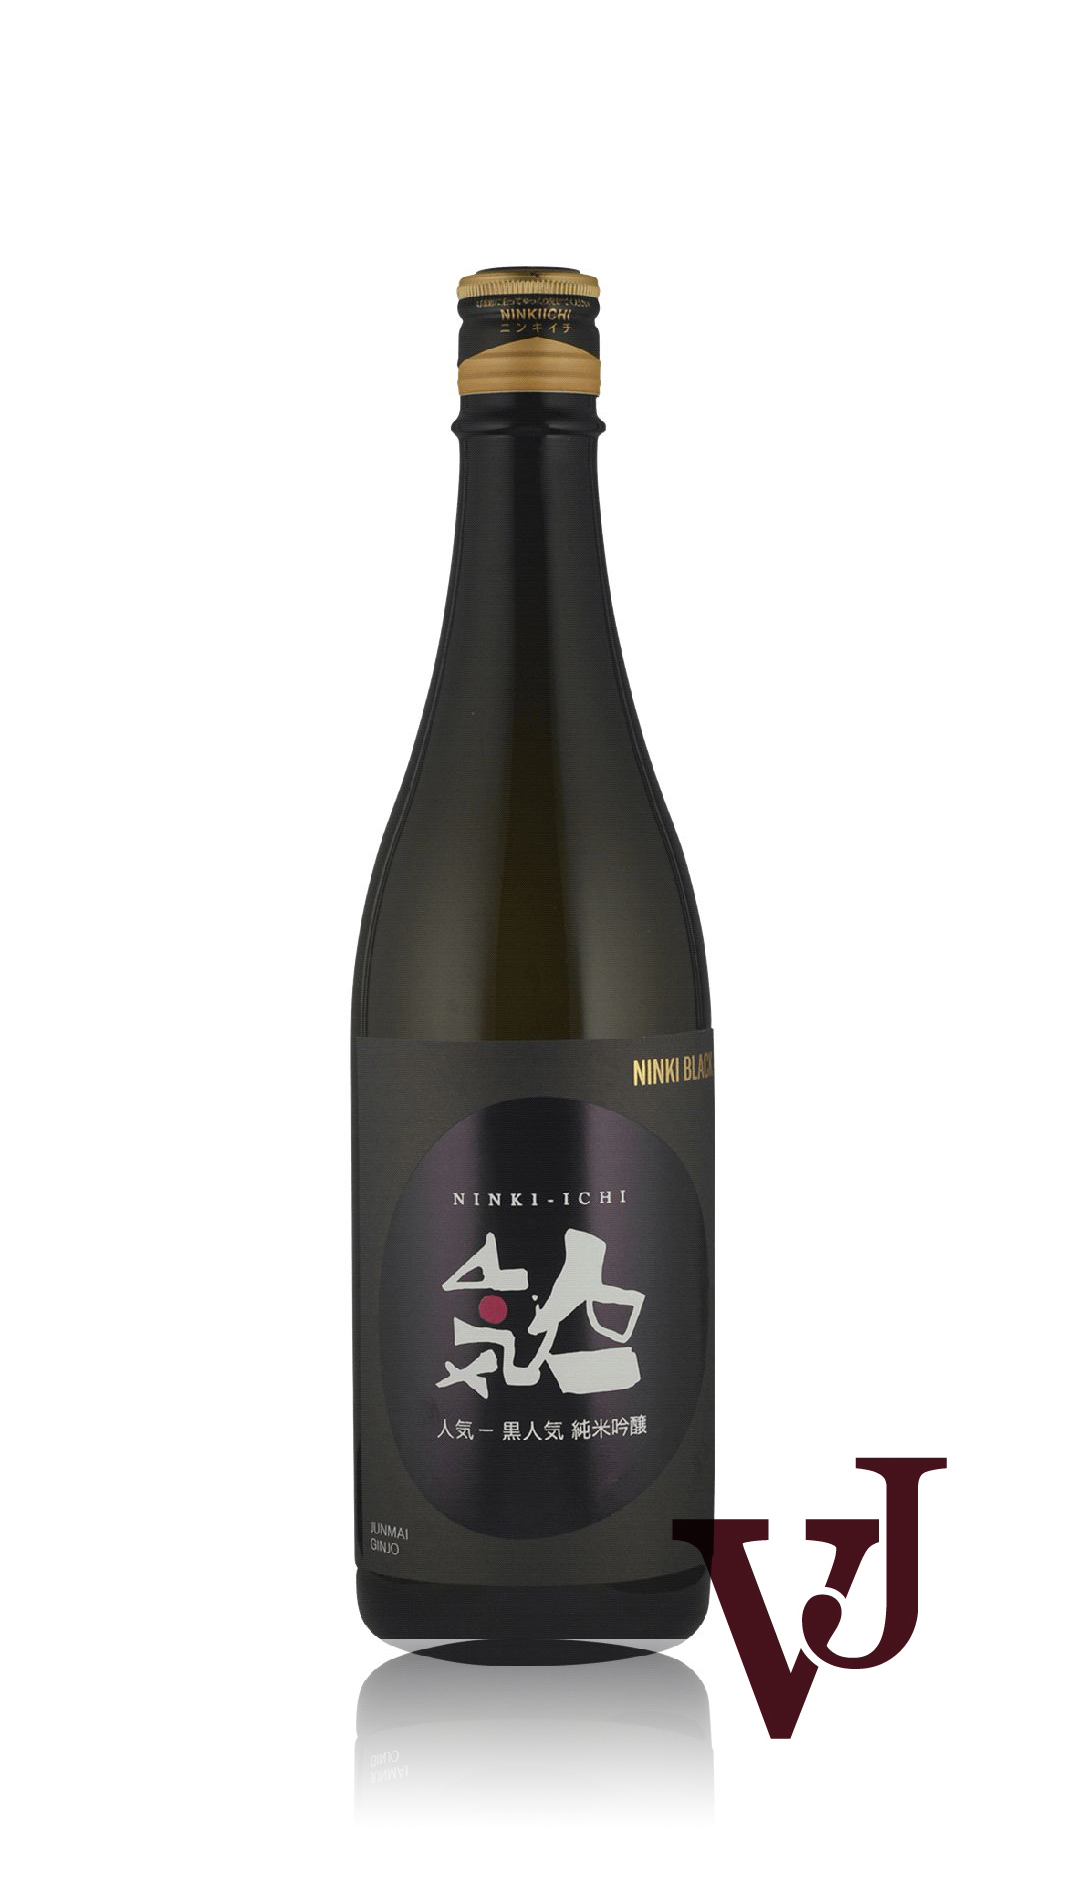 Övrigt vin - Ninki Ichi Black Junmai Ginjo artikel nummer 7656901 från producenten Flying Brewery från området Japan - Vinjournalen.se